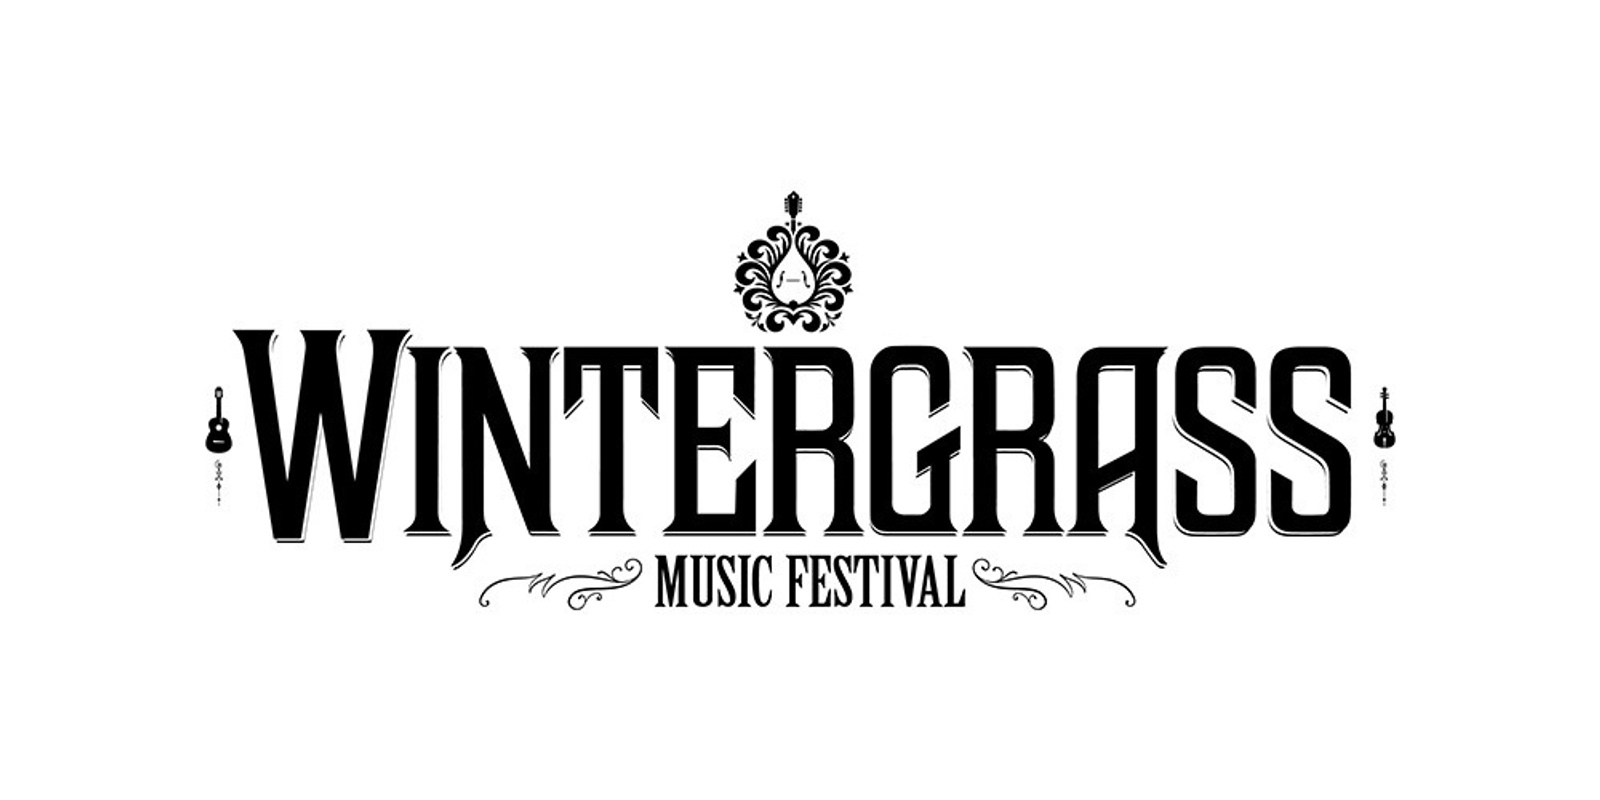 Banner image for Wintergrass Music Festival